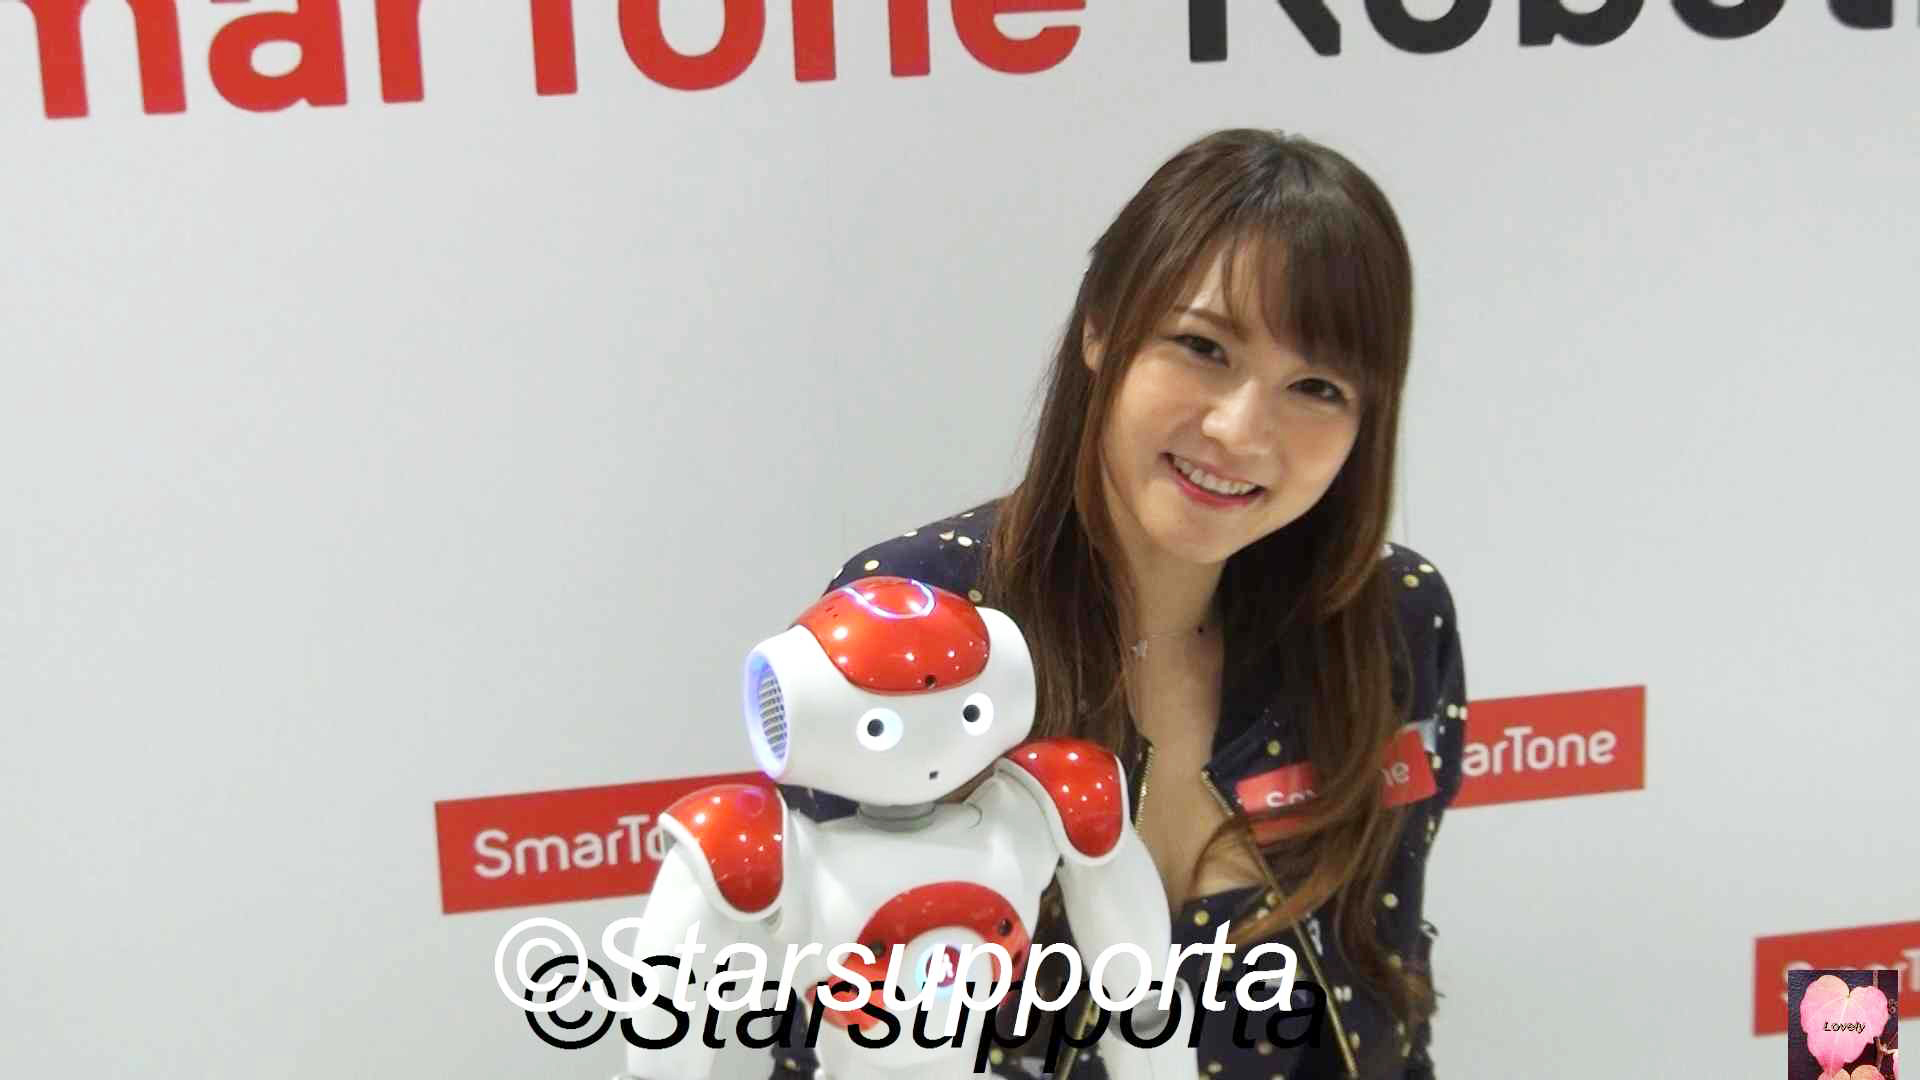 20170214 簡幗儀 Lilian Kan @ 機械人做客戶服務，SmarTone Robotics 起動! @ 香港APM Smartone 